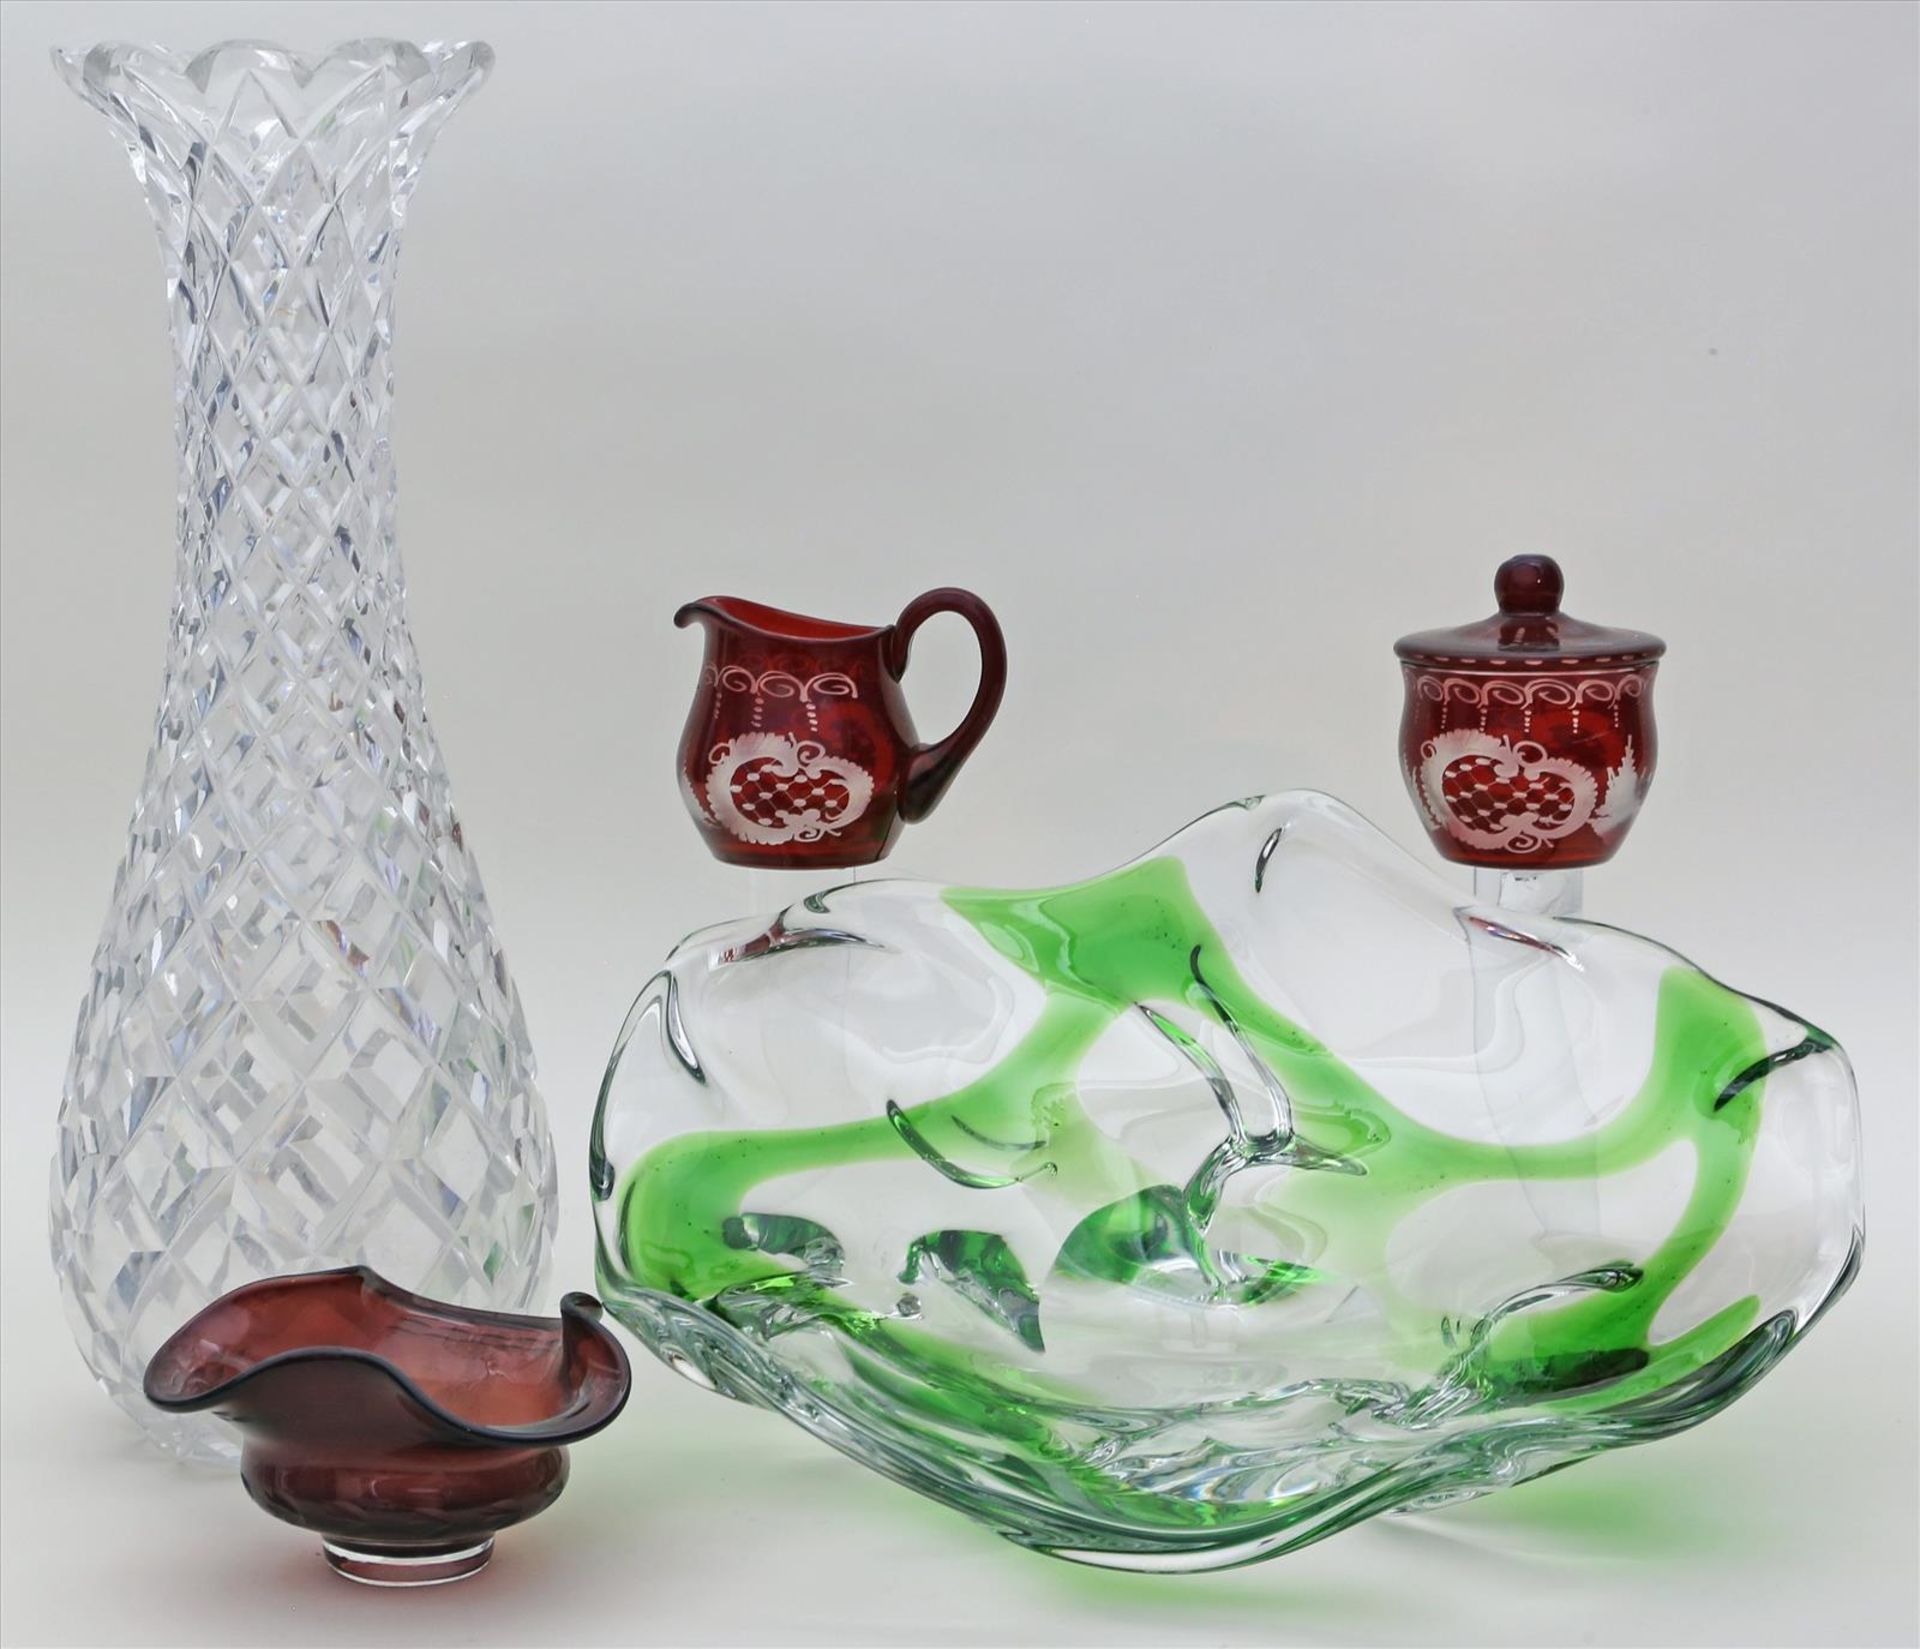 5 Teile Glas/Kristall.Verschiedene Ausführungen. Dabei große Kristallvase mit Schliffdekor (